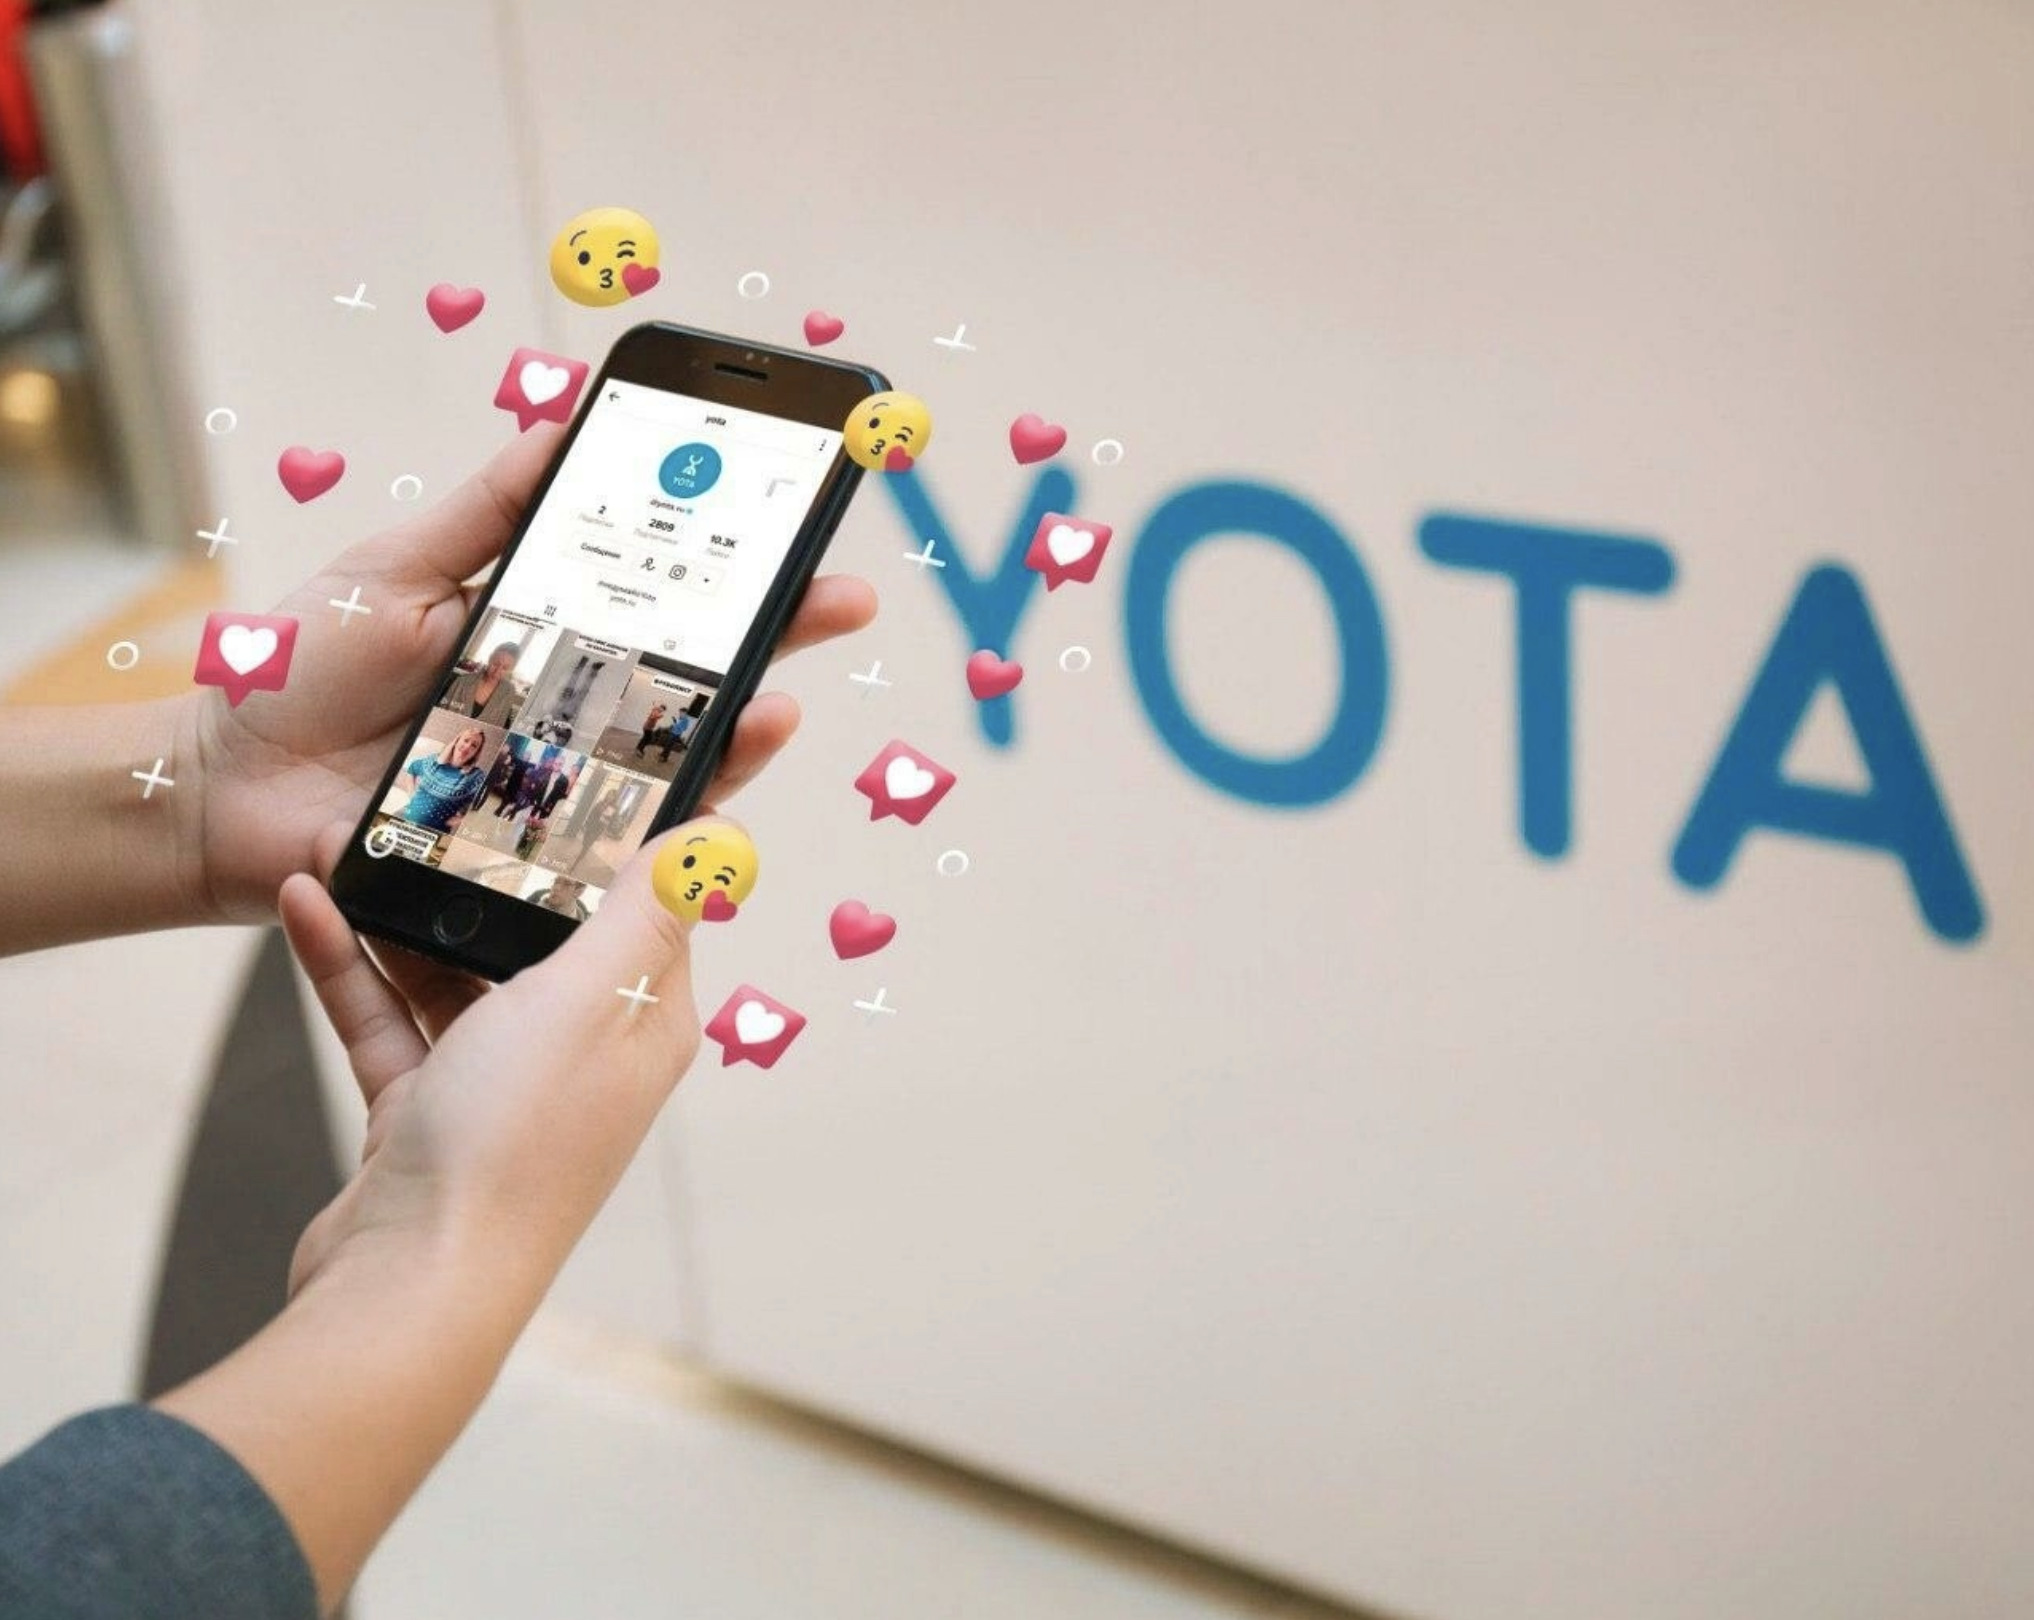 Пользователи Yota могут выбрать свой собственный тариф с нужным количеством минут и гигабайтов интернета